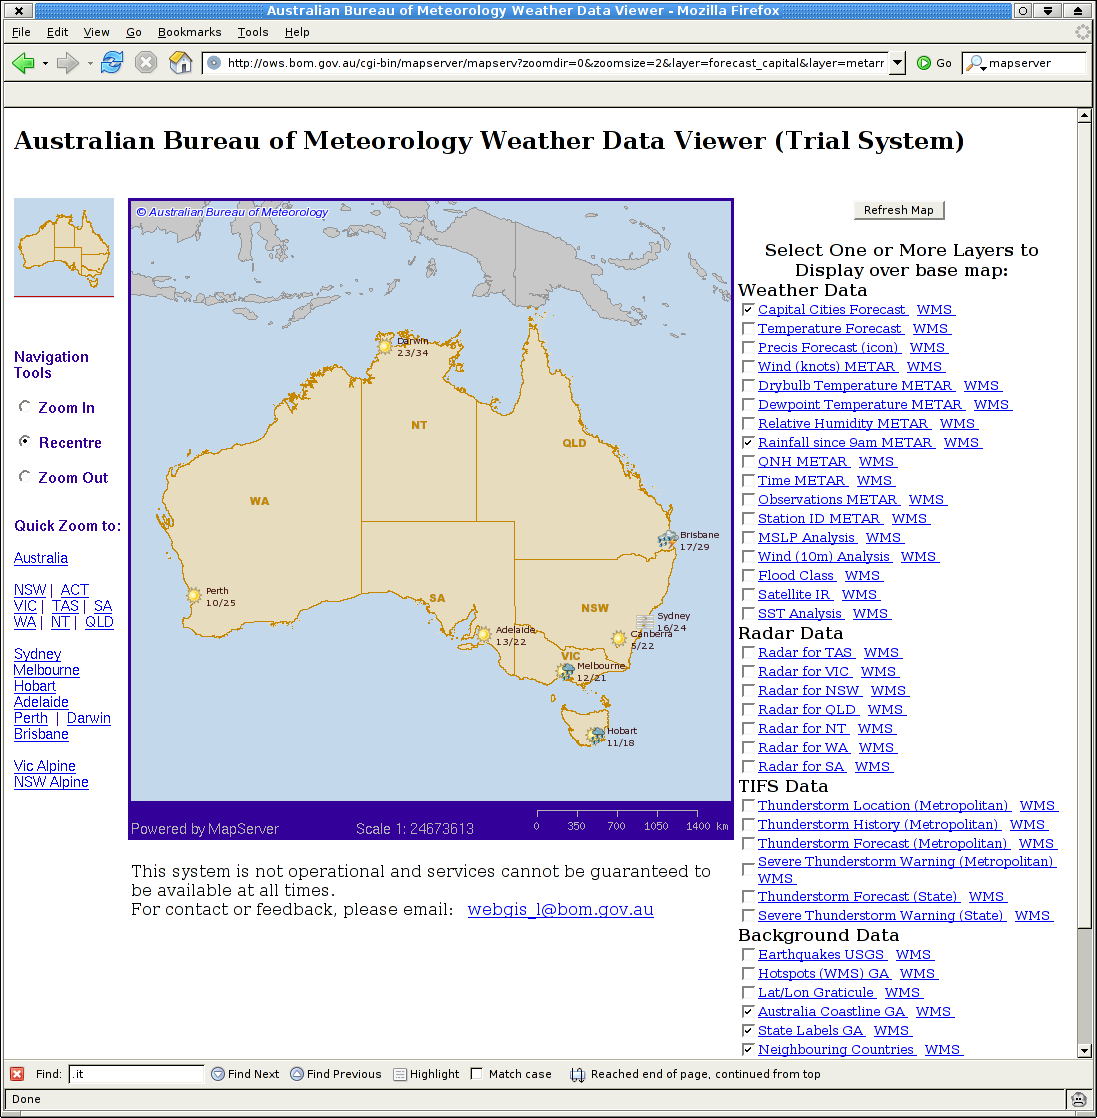 -- Ufficio meteorologico australiano